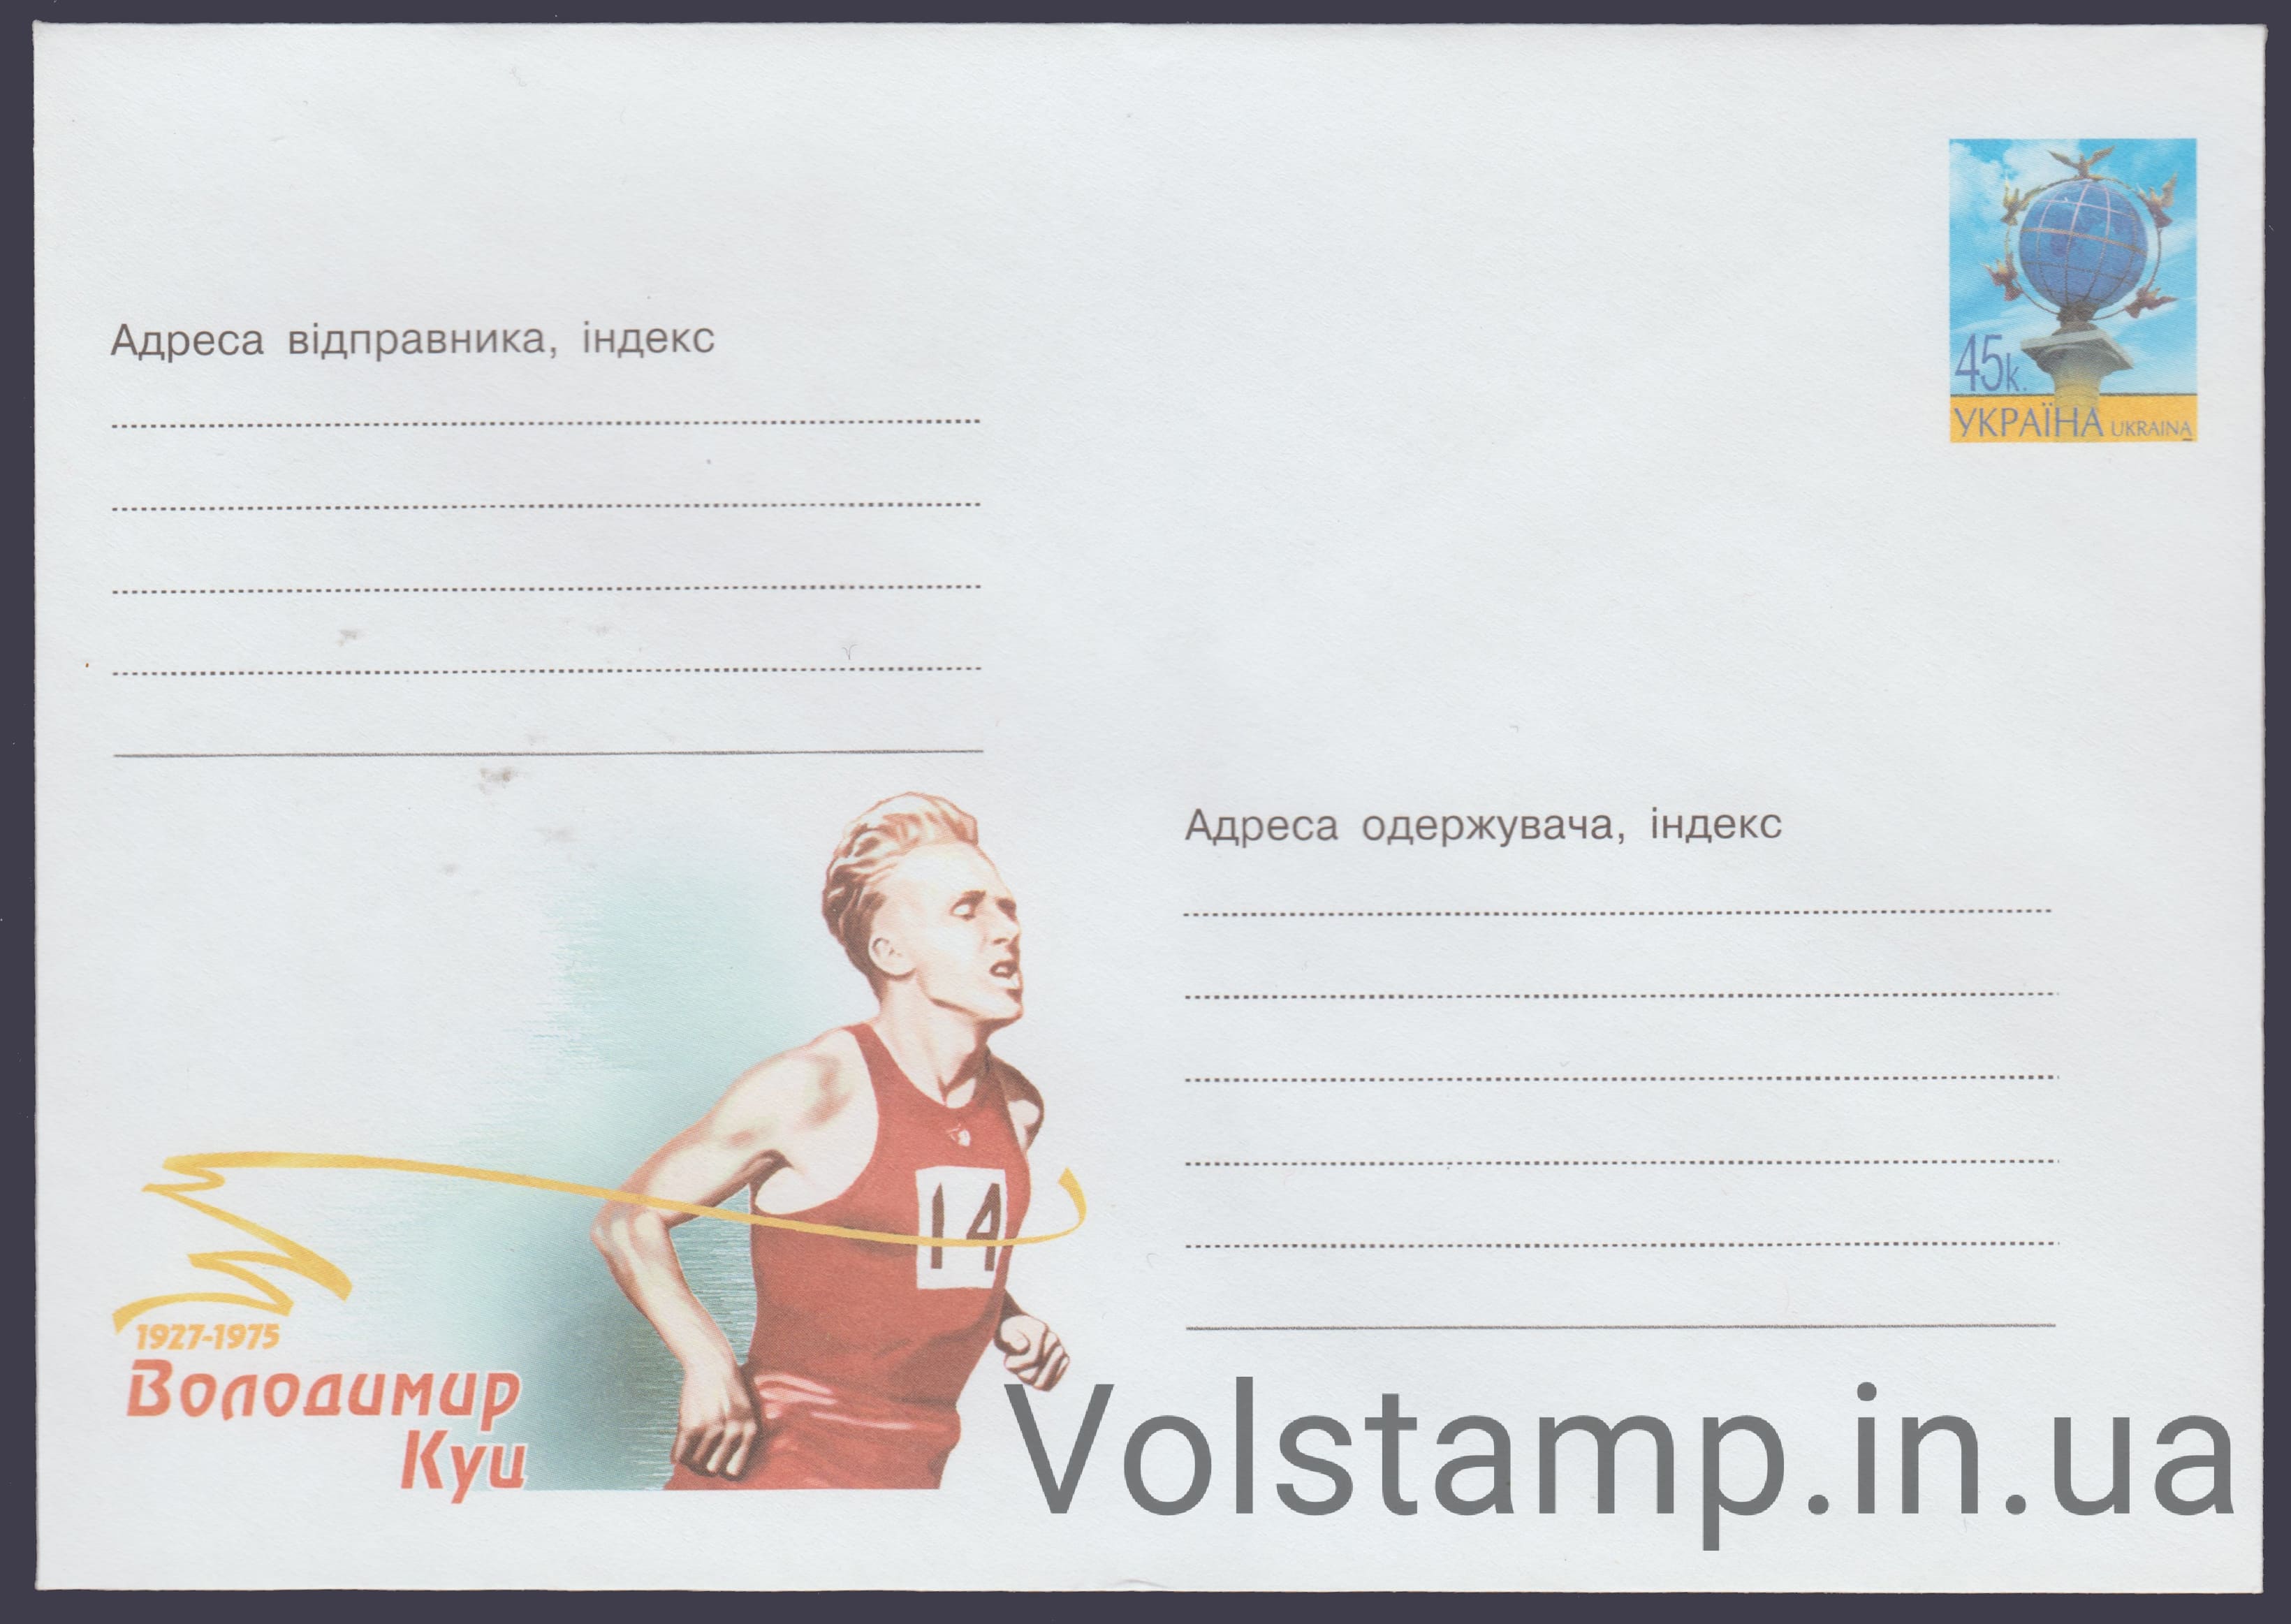 2002 ХМК Владимир Куц. 1927-1975 №2-3522